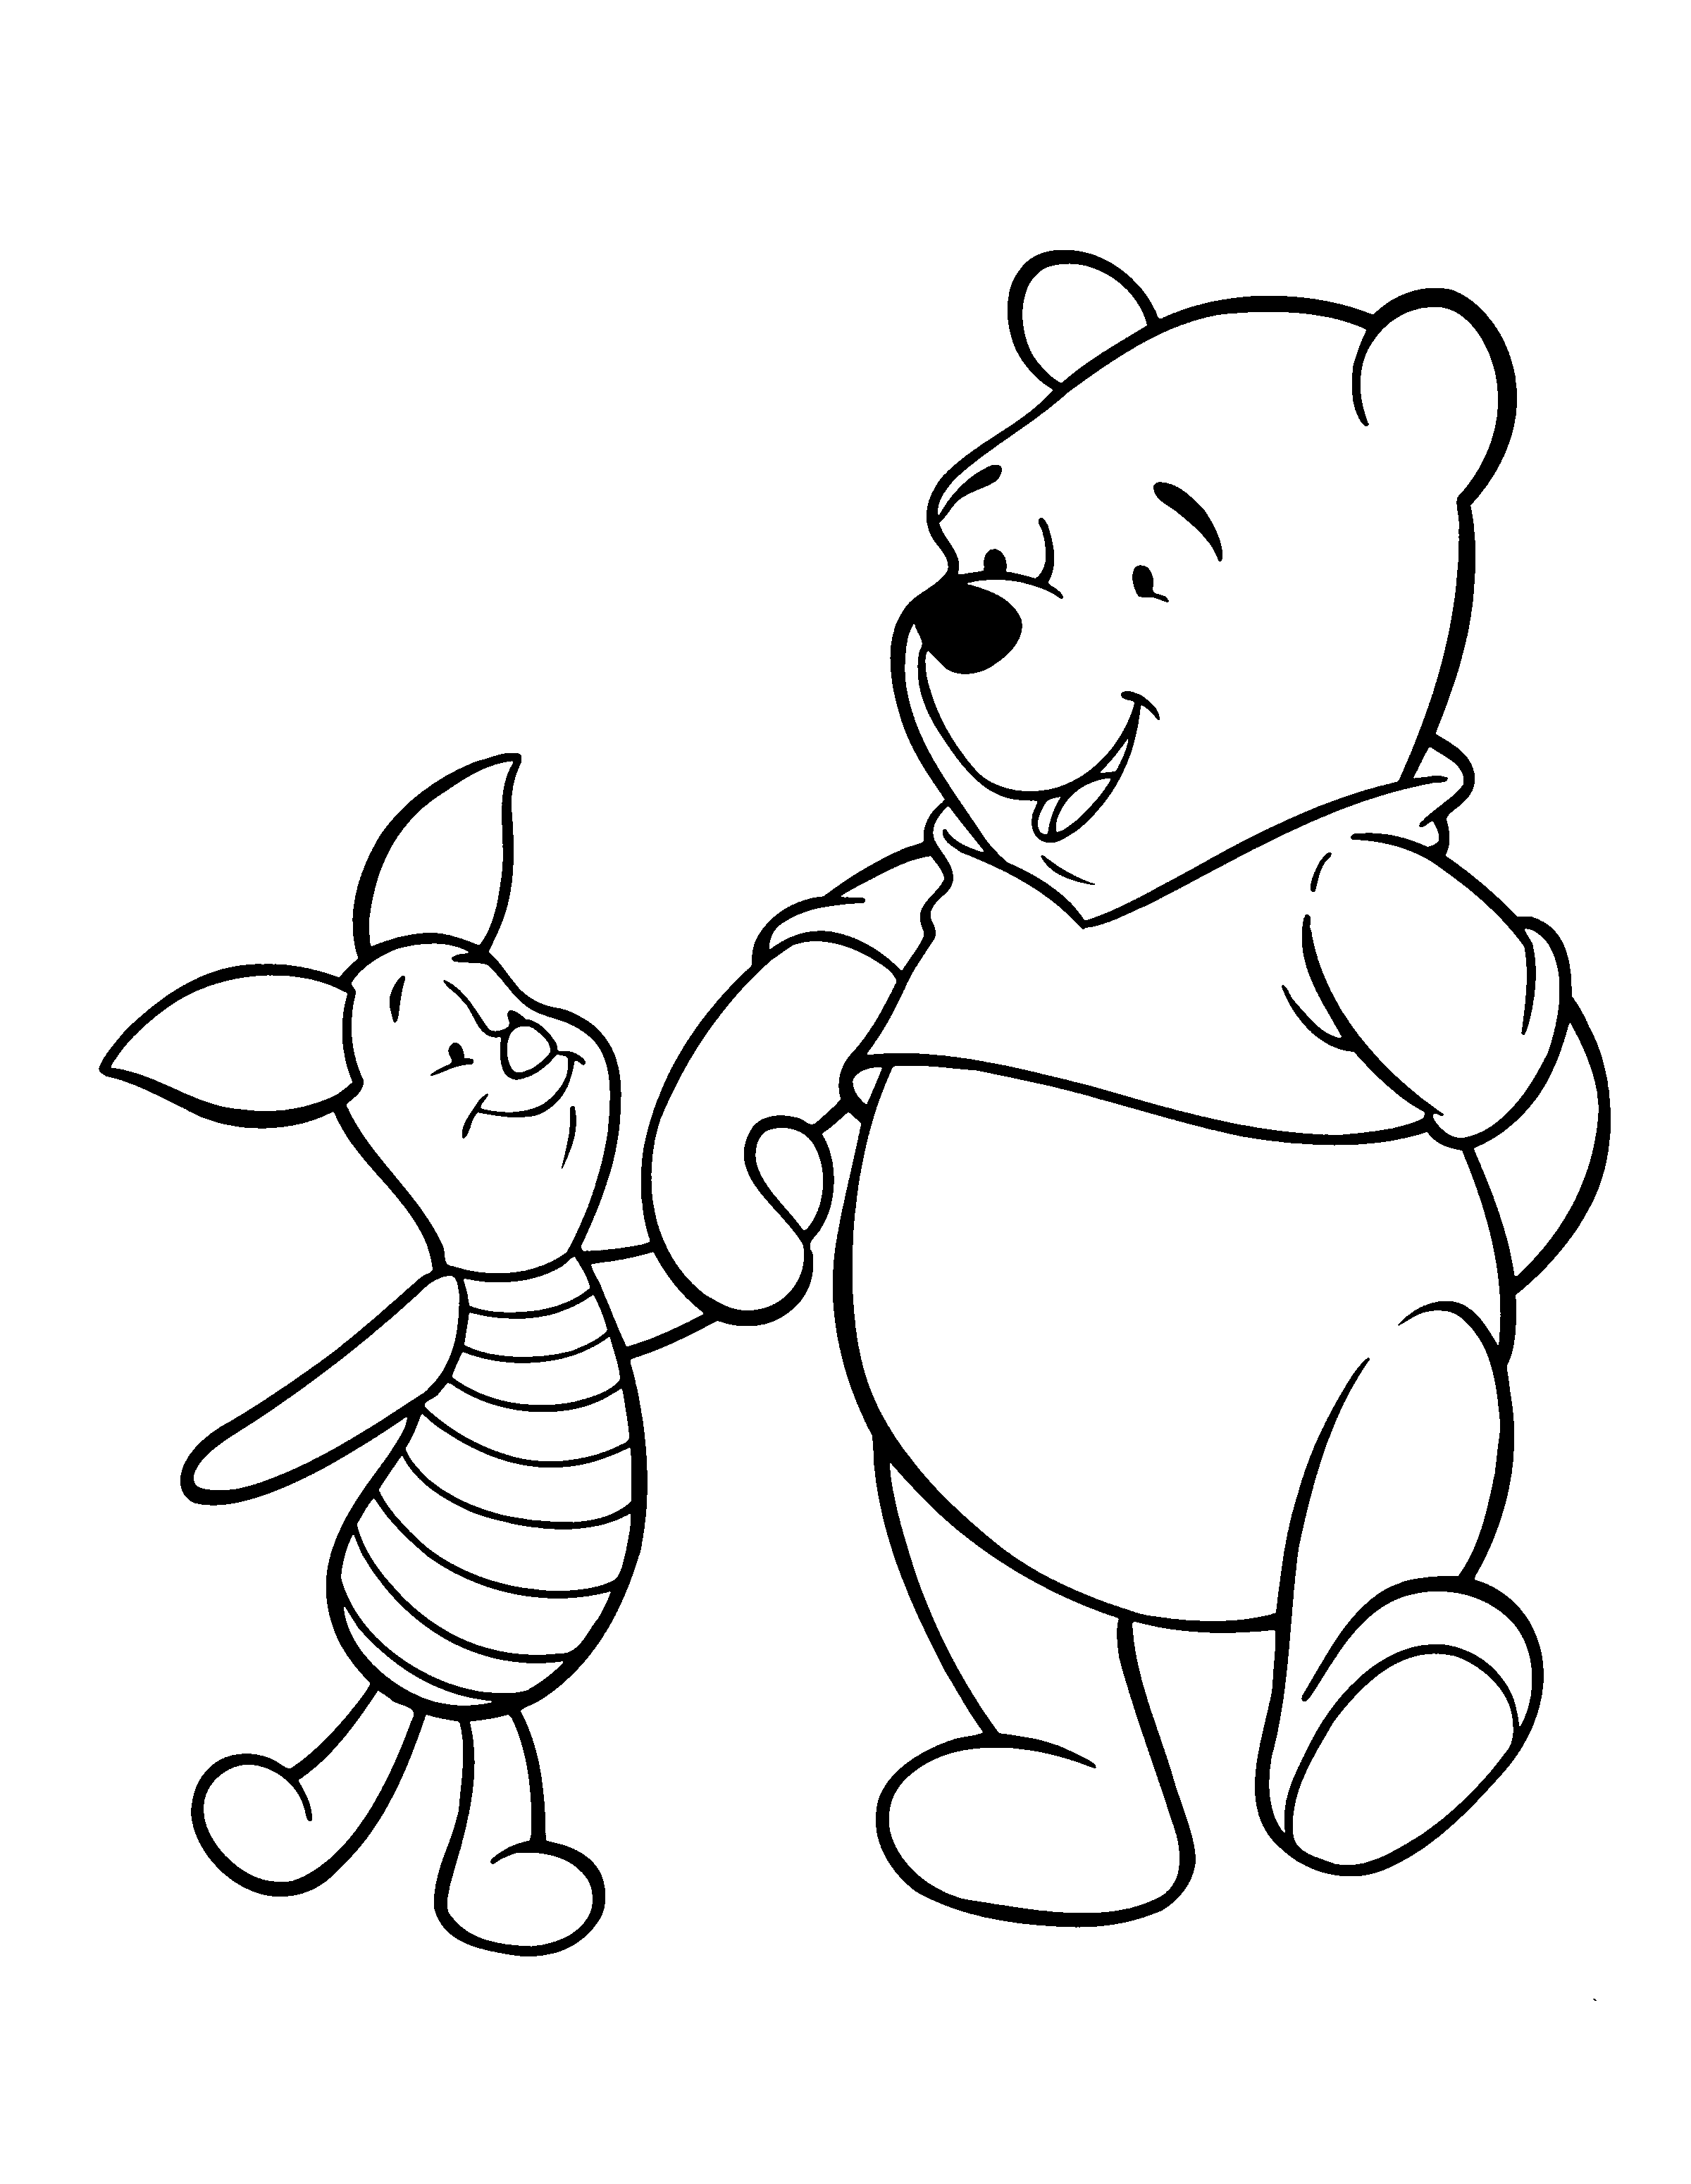 Tranh tô màu lợn Piglet và gấu Pooh